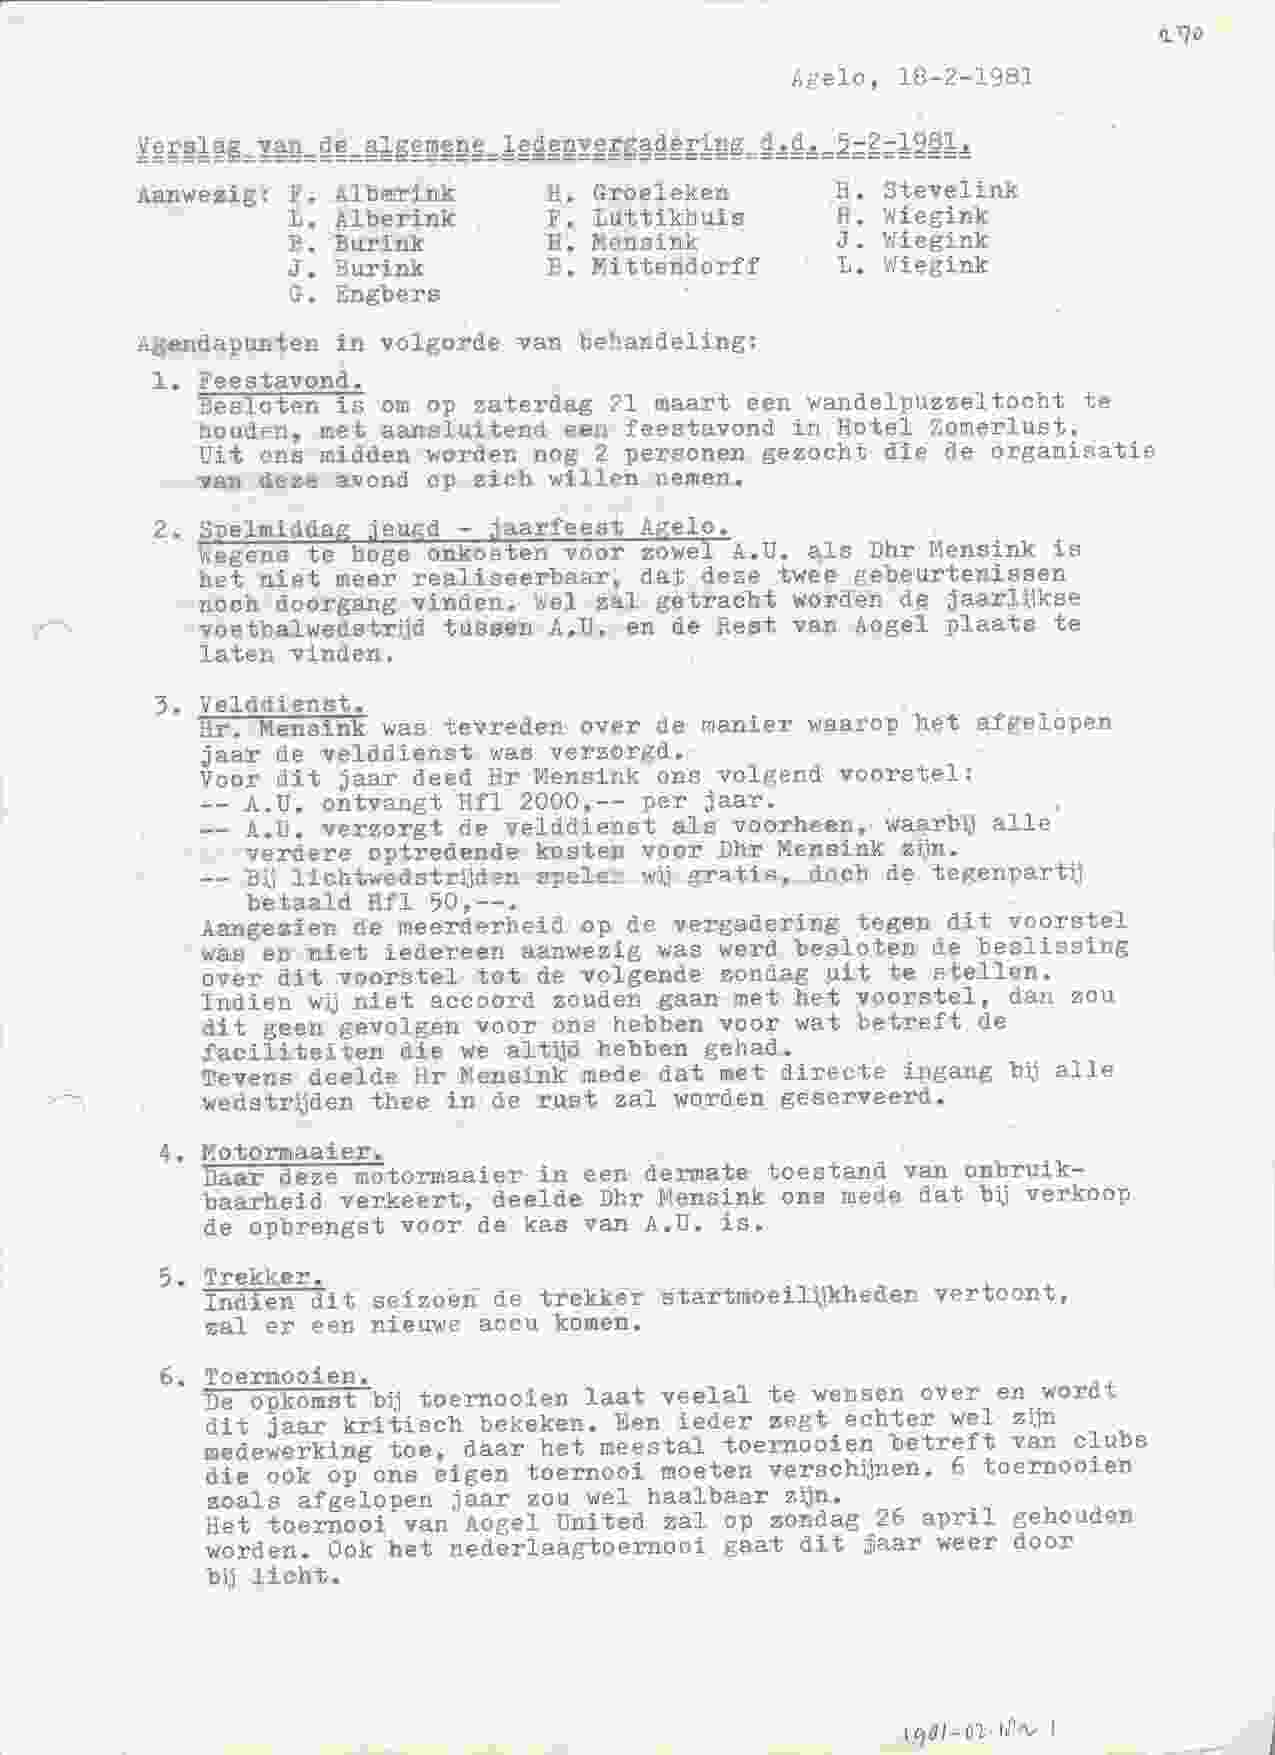 Notulen van de vergadering op 1981-02-18